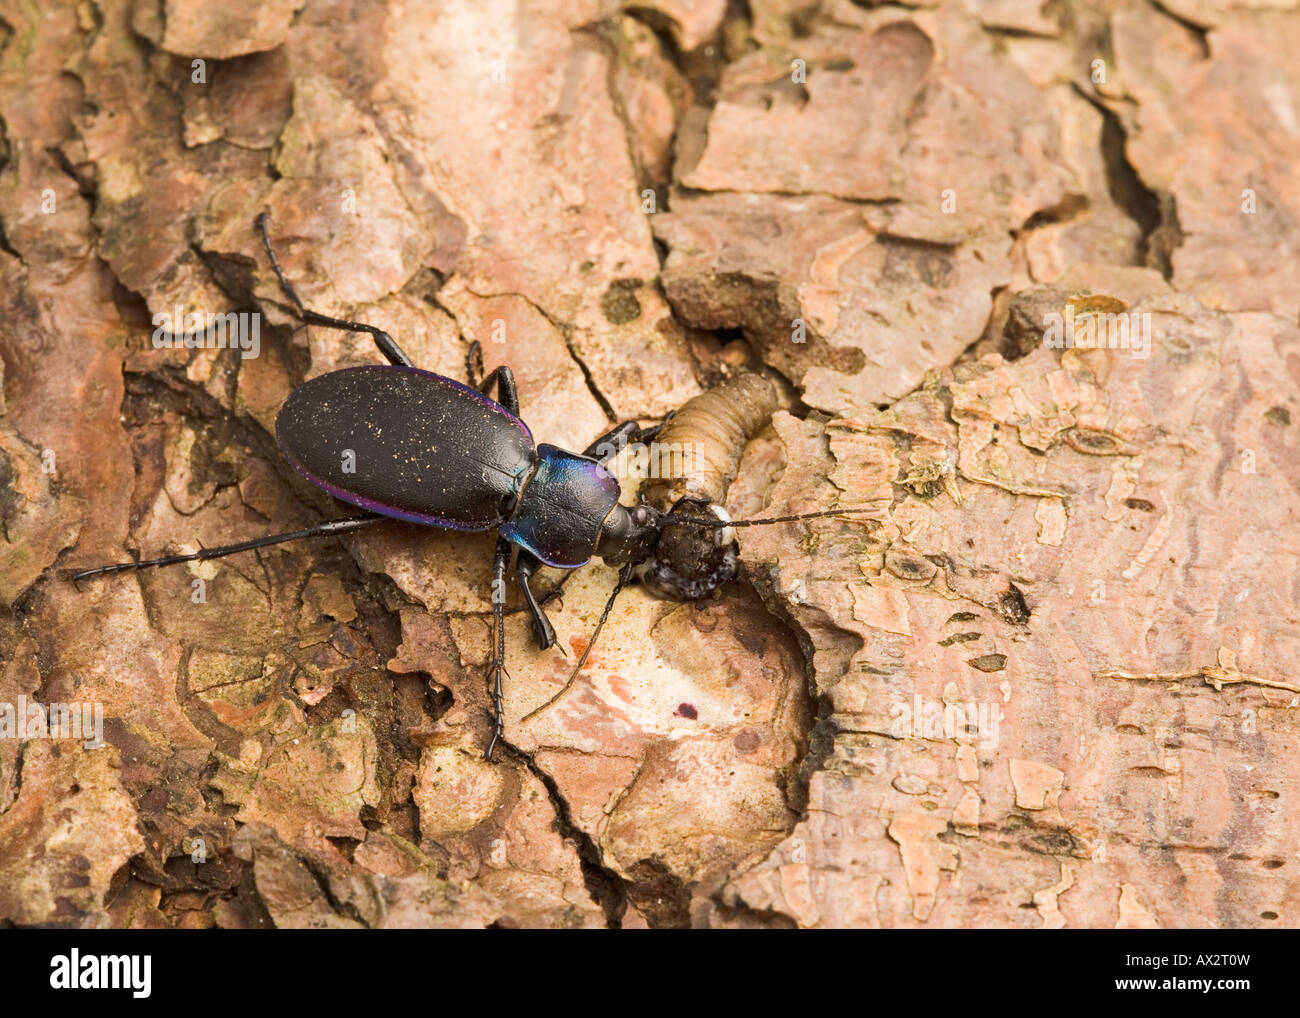 Massa viola beetle Carabus tendente al violaceo sulla alimentazione leatherjacket Foto Stock